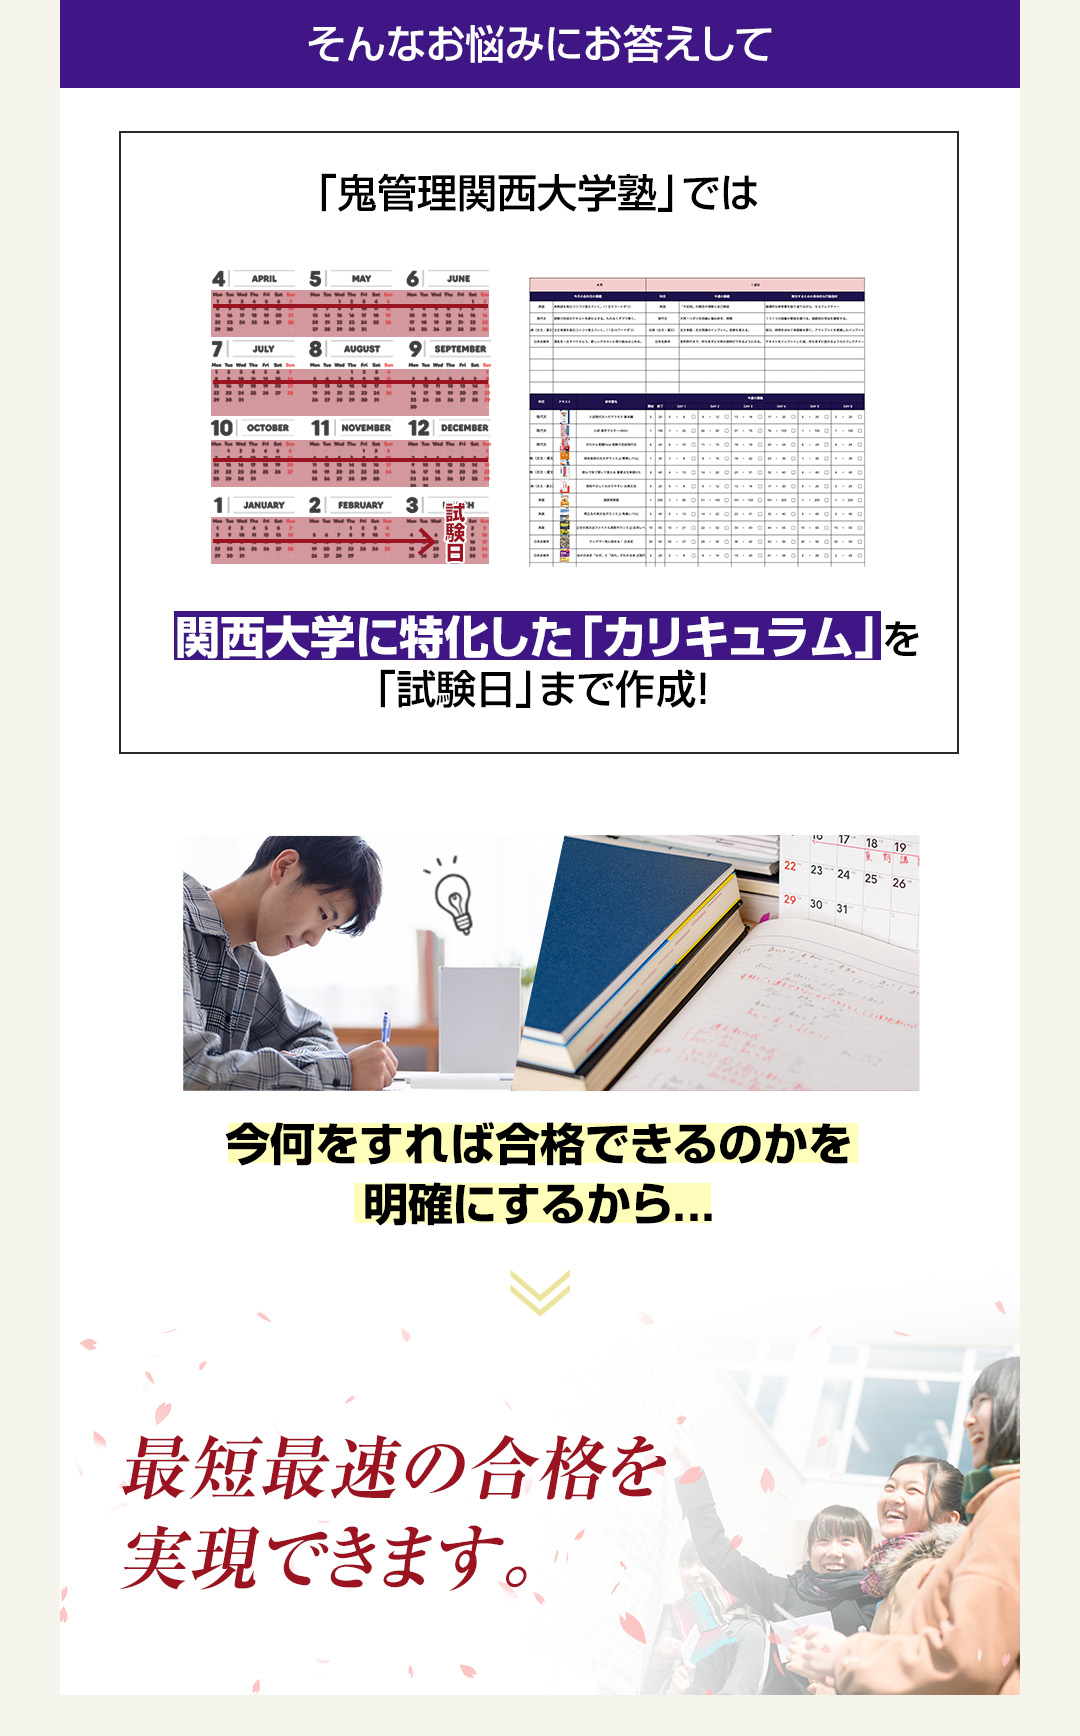 「鬼管理関西大学塾」では関西大学に特化した「カリキュラム」を「試験日」まで作成